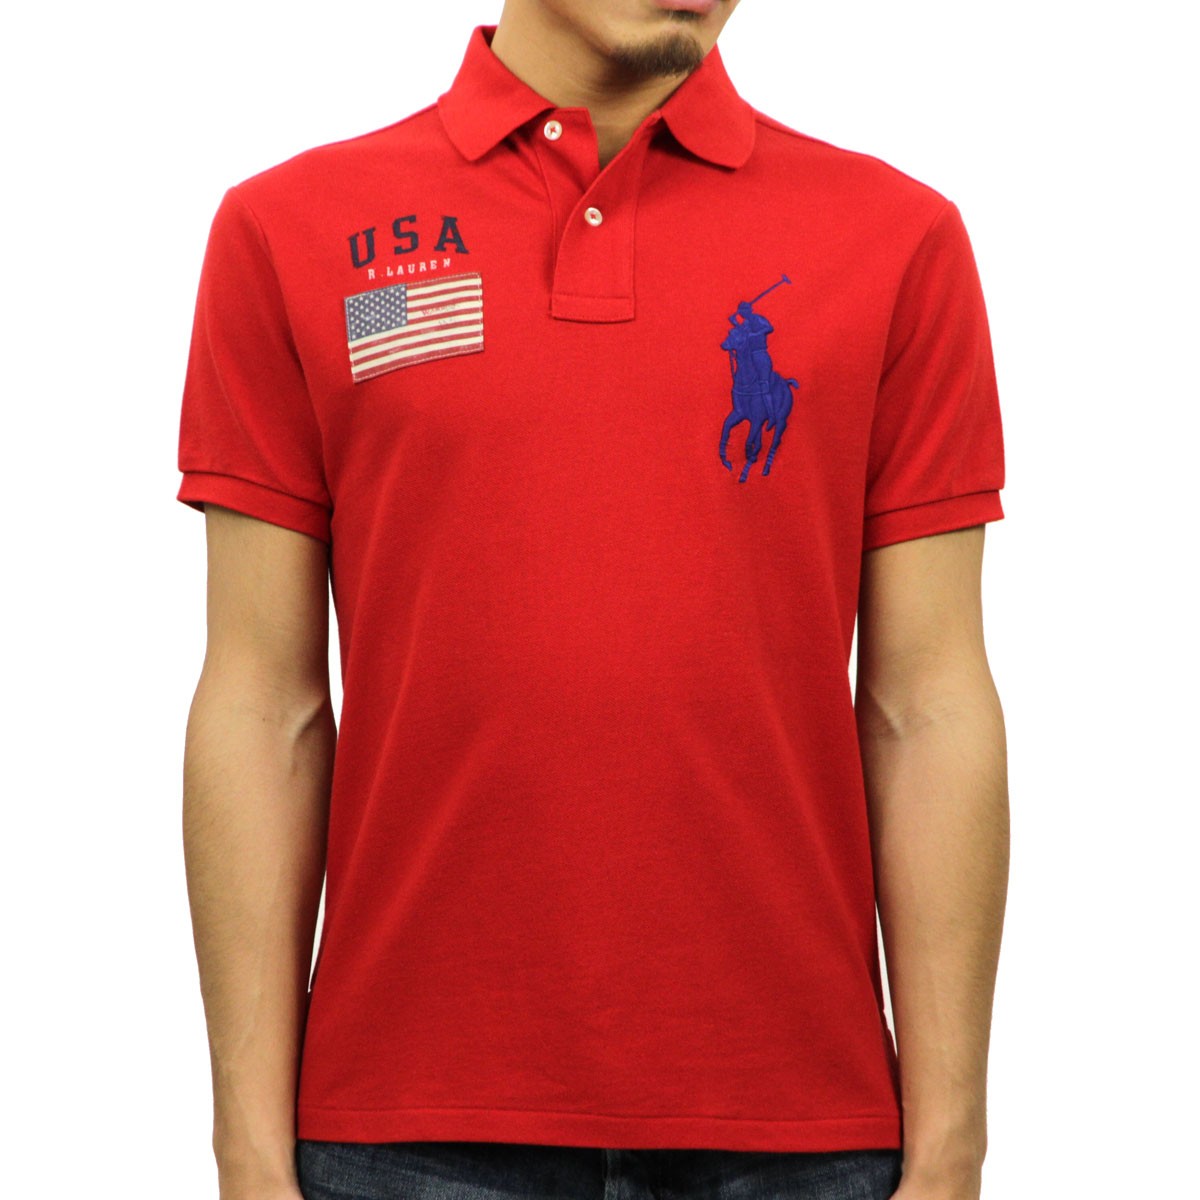 ポロ ラルフローレン メンズ POLO RALPH LAUREN 正規品 ポロシャツ USA FLAG BIG PONY  :4070180511:ブランド品インポートセレクトショップMIXON - 通販 - Yahoo!ショッピング